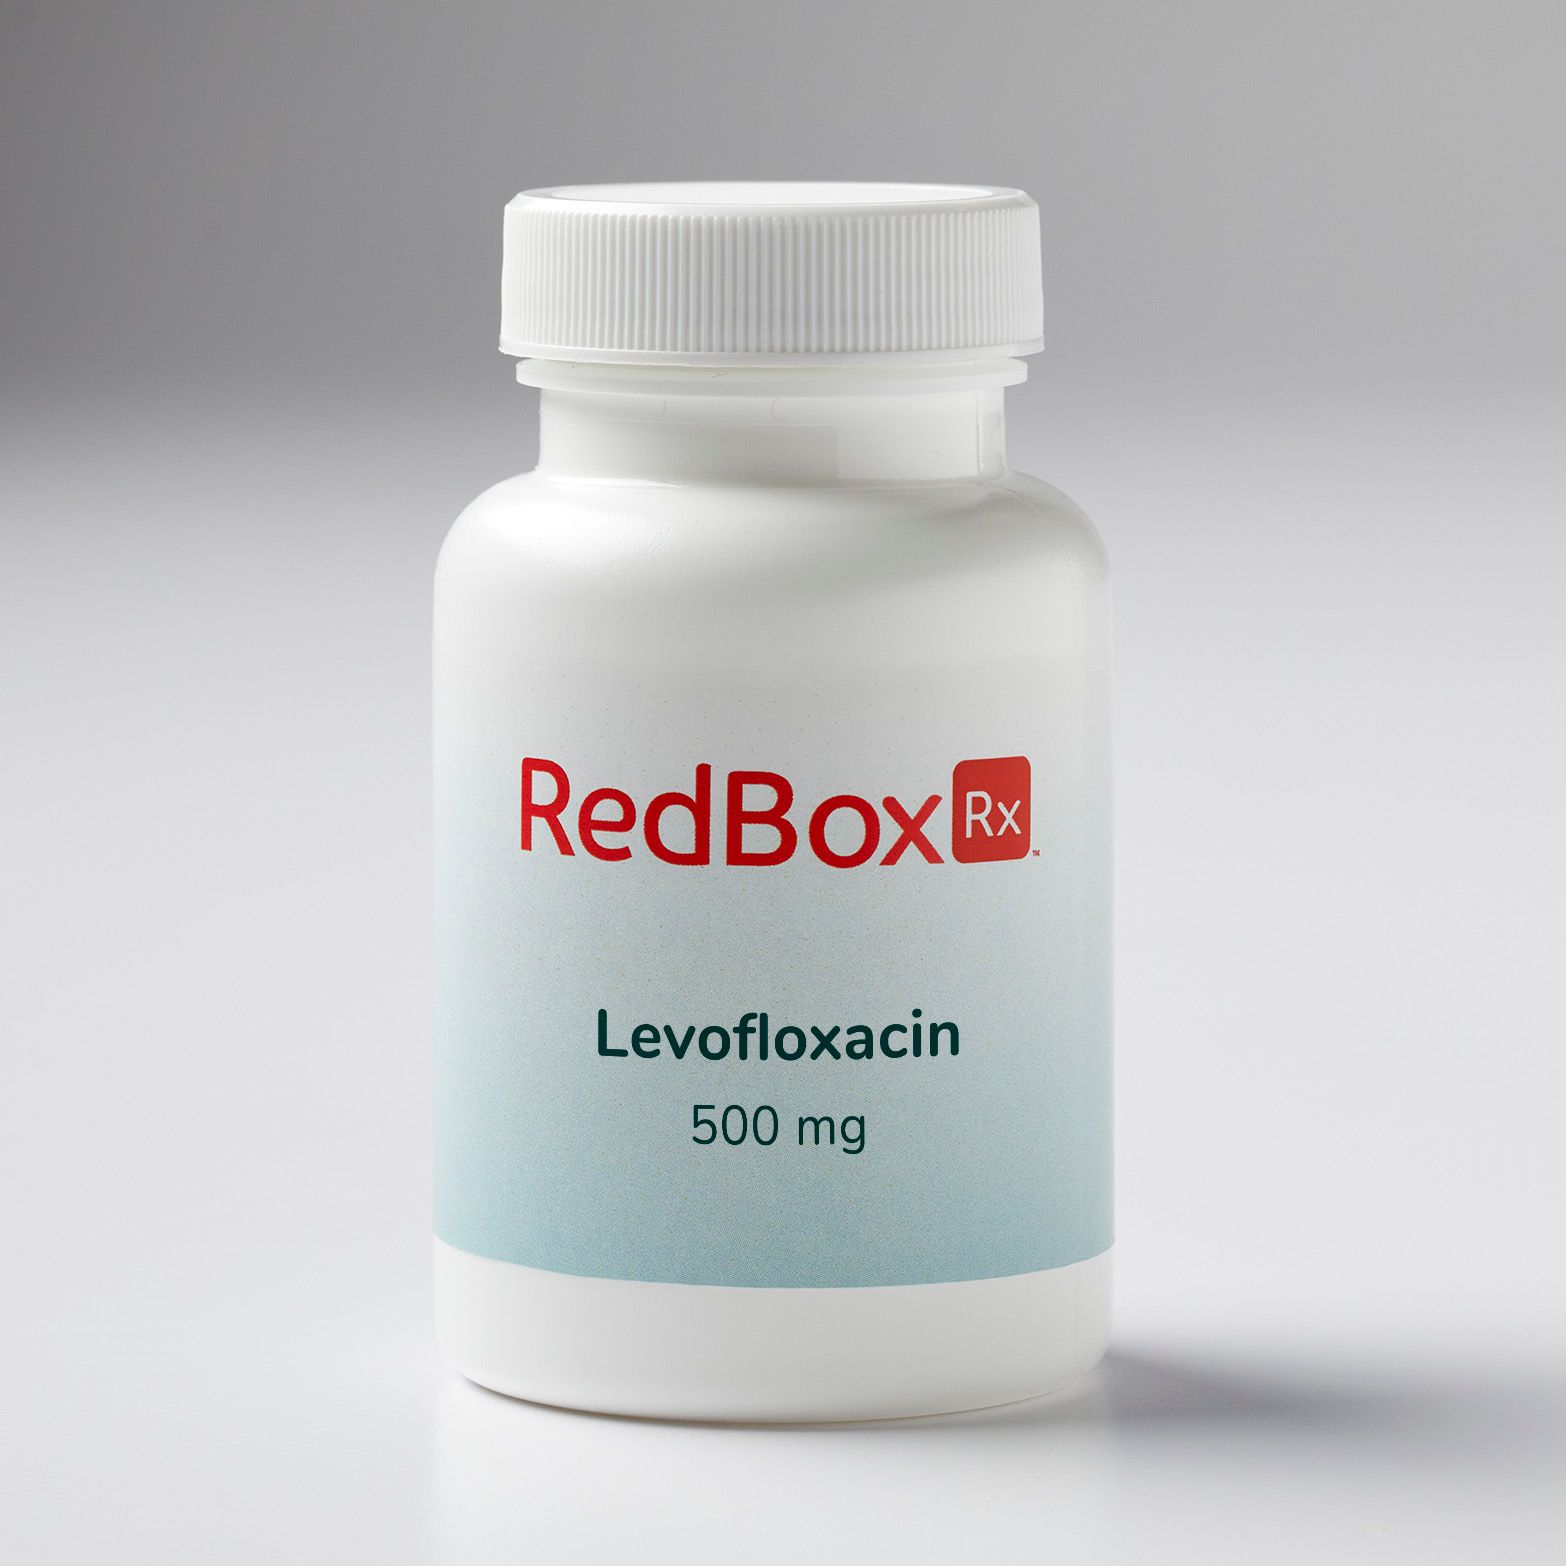 An image of levofloxacin